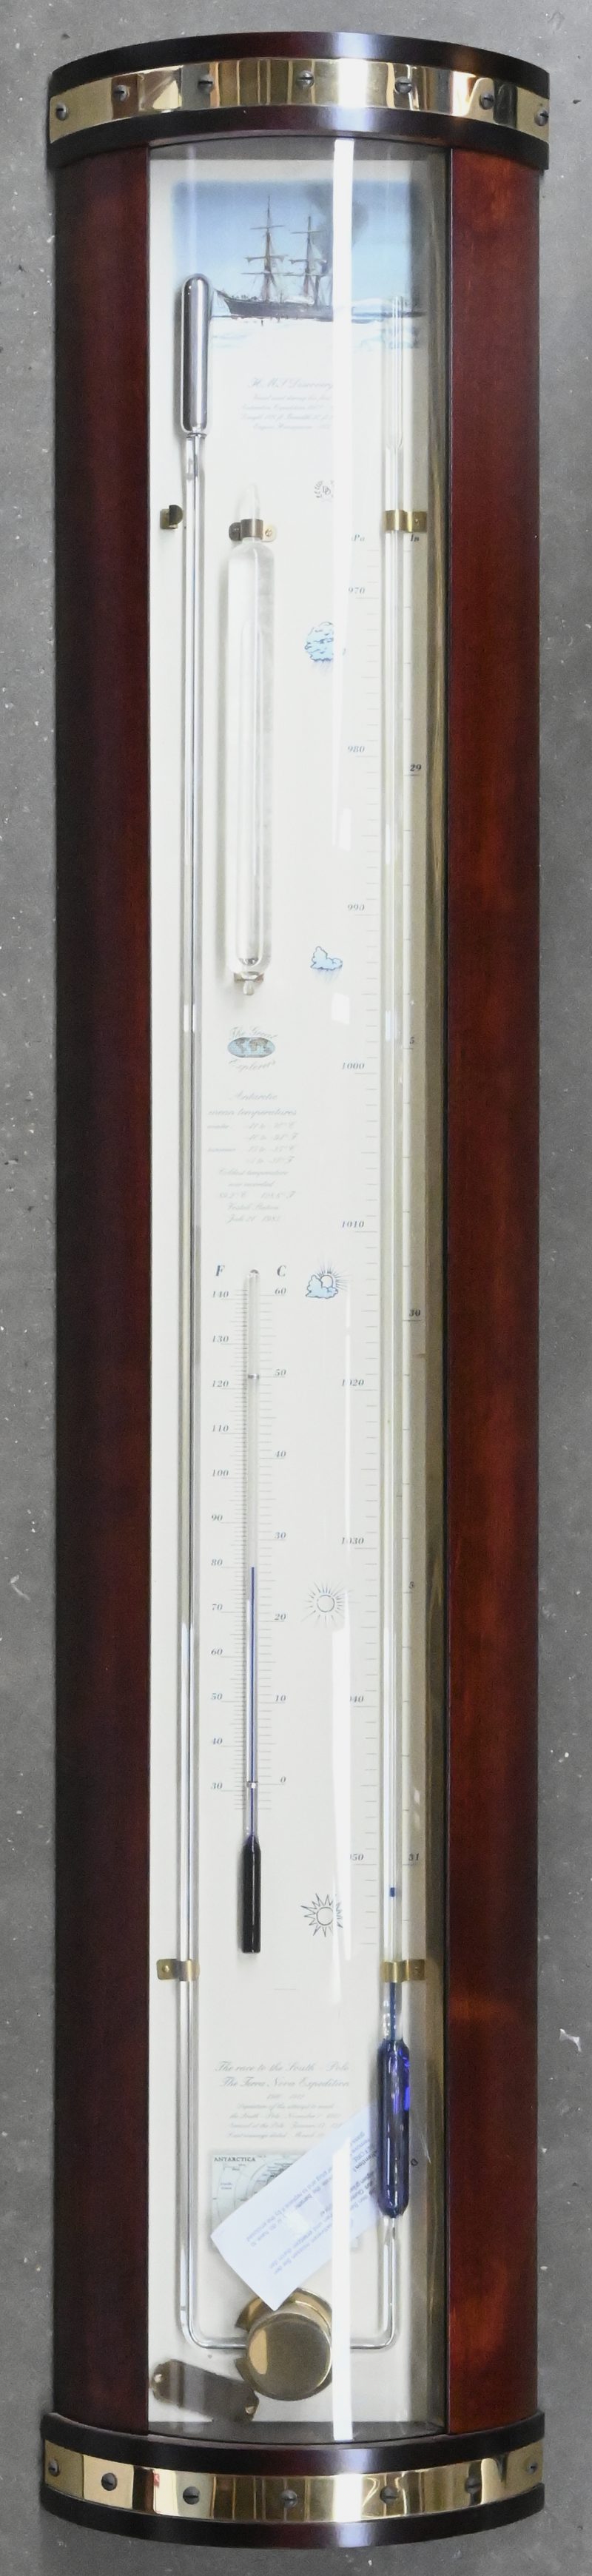 Een contrabarometer op houten paneel met bol glazen front. Genummerd K035.504AC, door Dingens Barometers, made in Belgium.